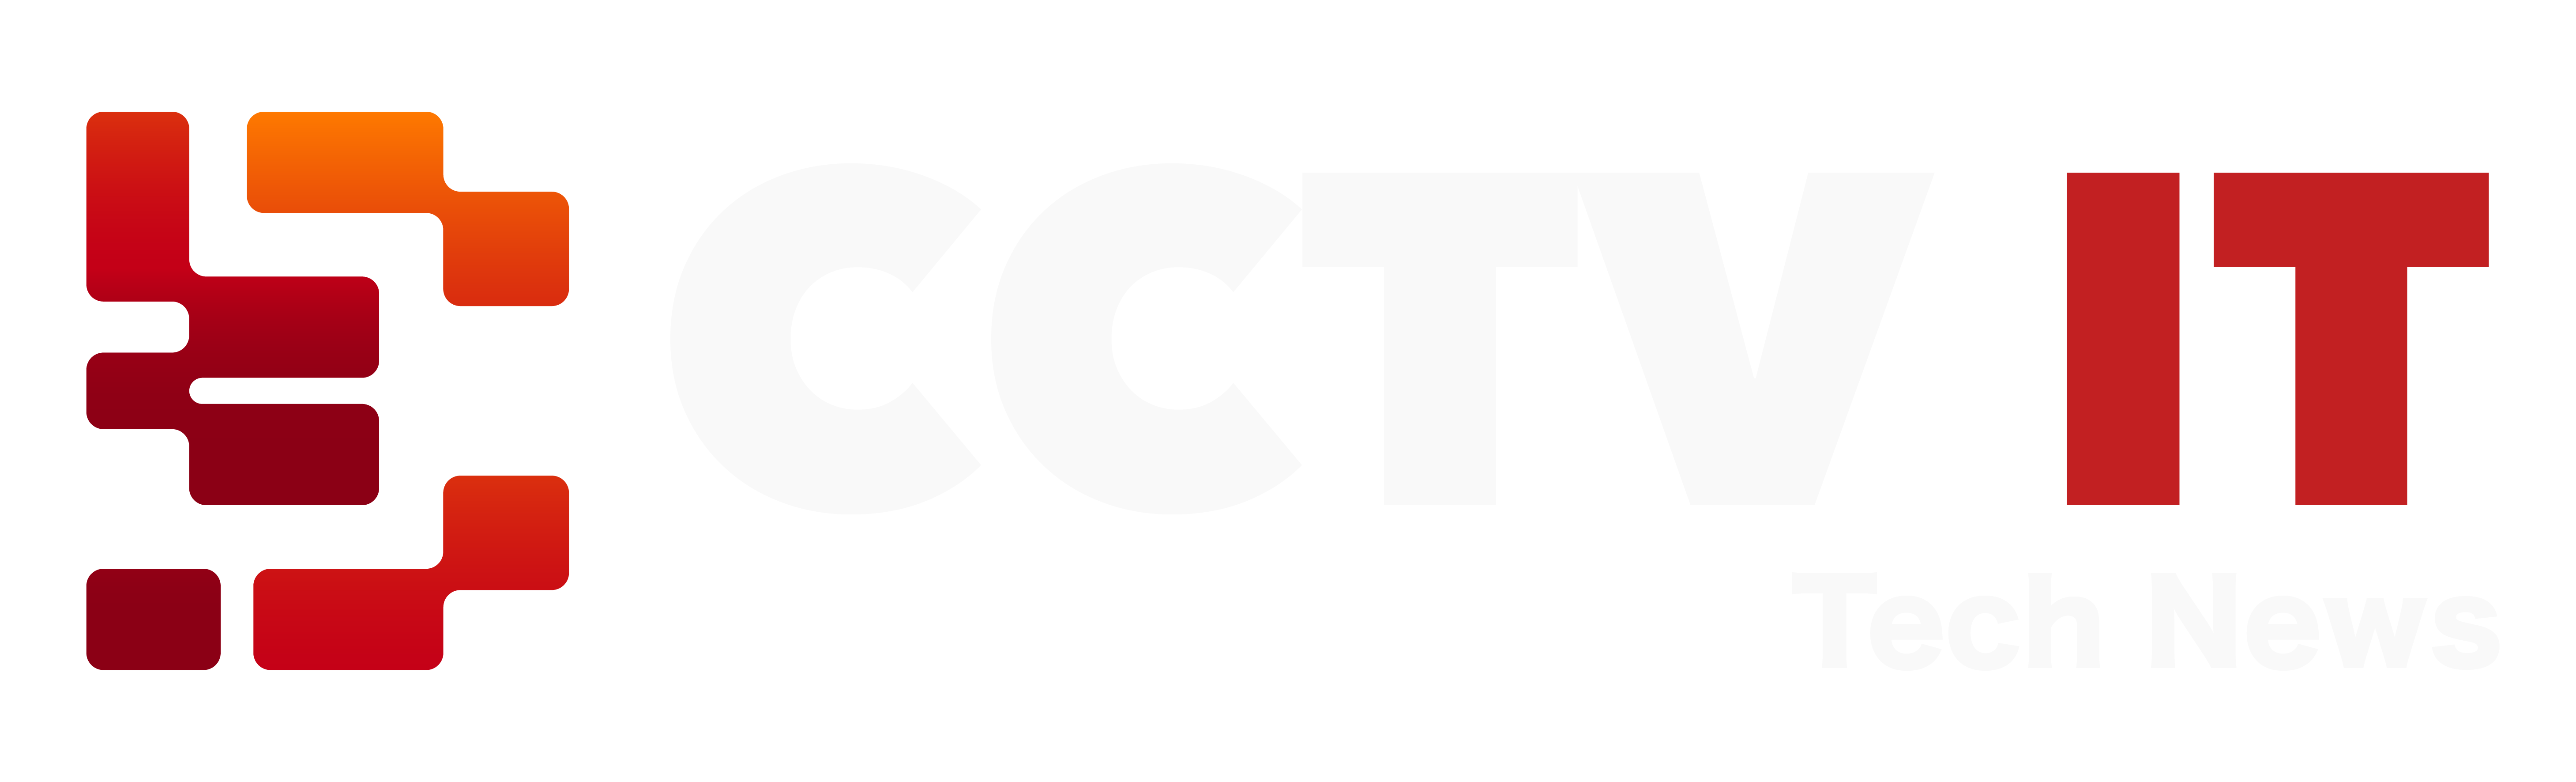 Chia Sẻ Kỹ Thuật về CCTV IT